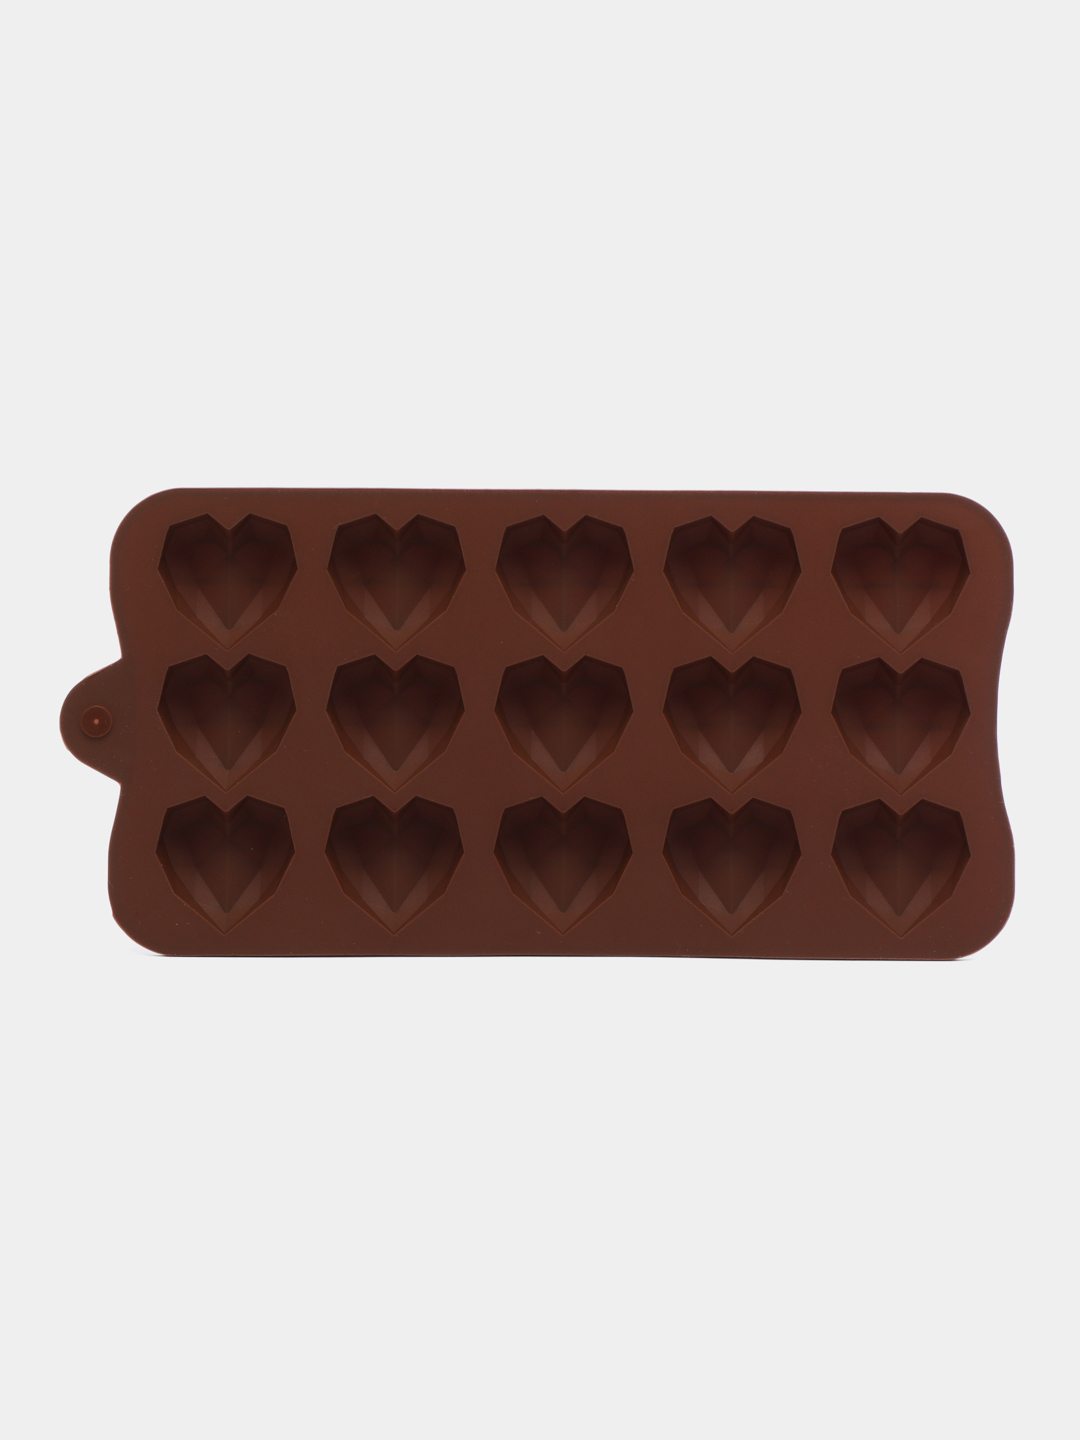 Как украсить торт шоколадными сердечками